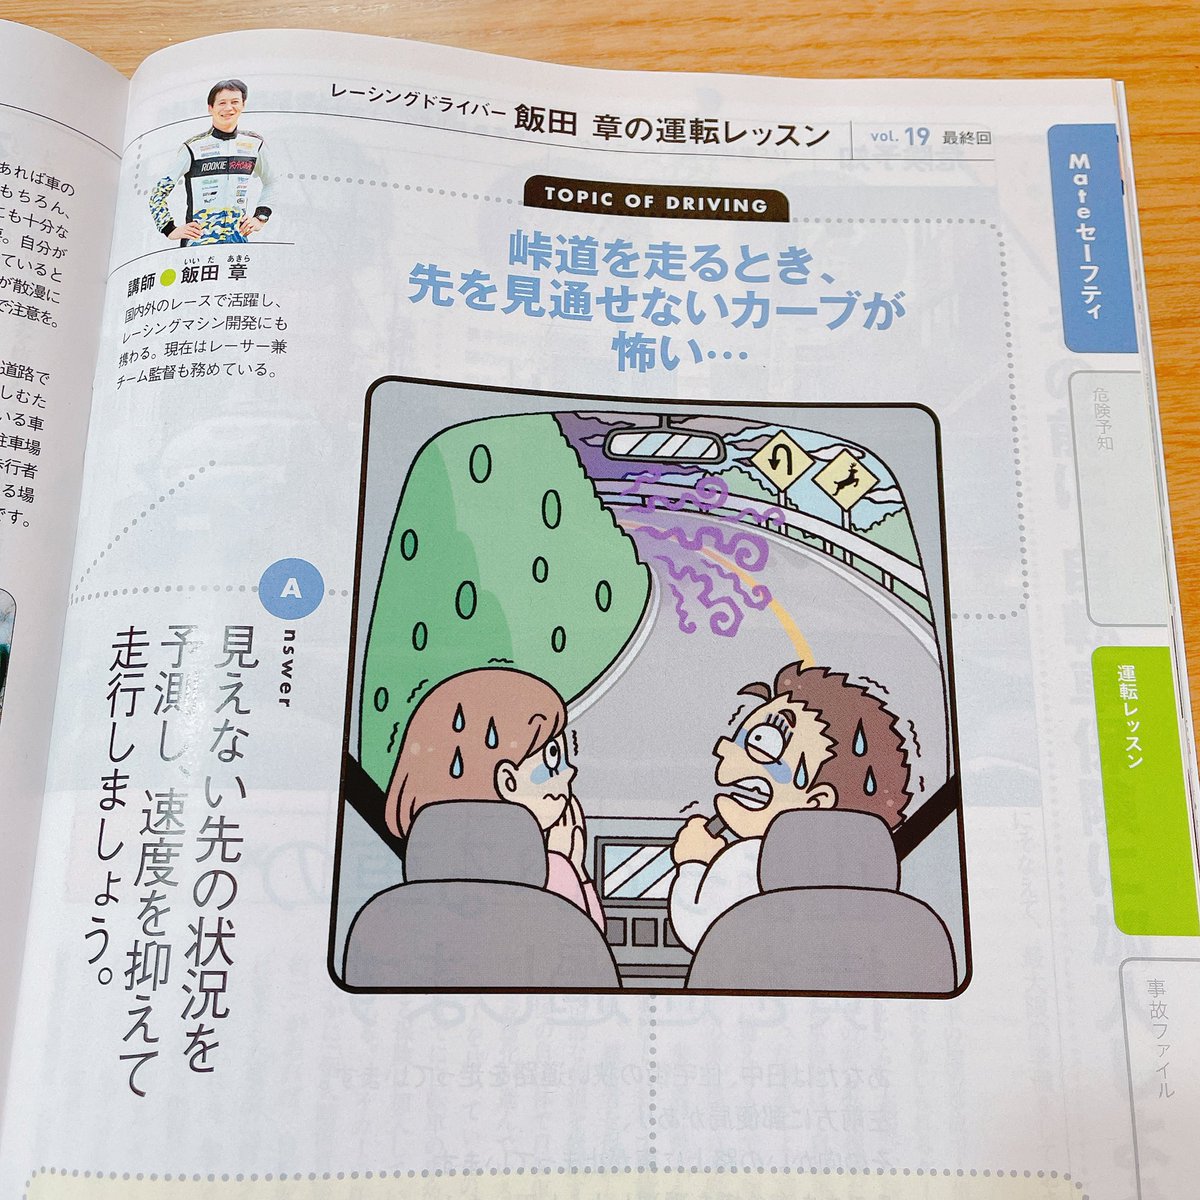 『JAF Mate』さん2.3月合併号、4月号の『飯田章の運転レッスン』コーナーの挿絵を描かせていただきました!寂しいですが今回で最終回です。約2年勉強になりながらとても楽しく描かせていただきました? 